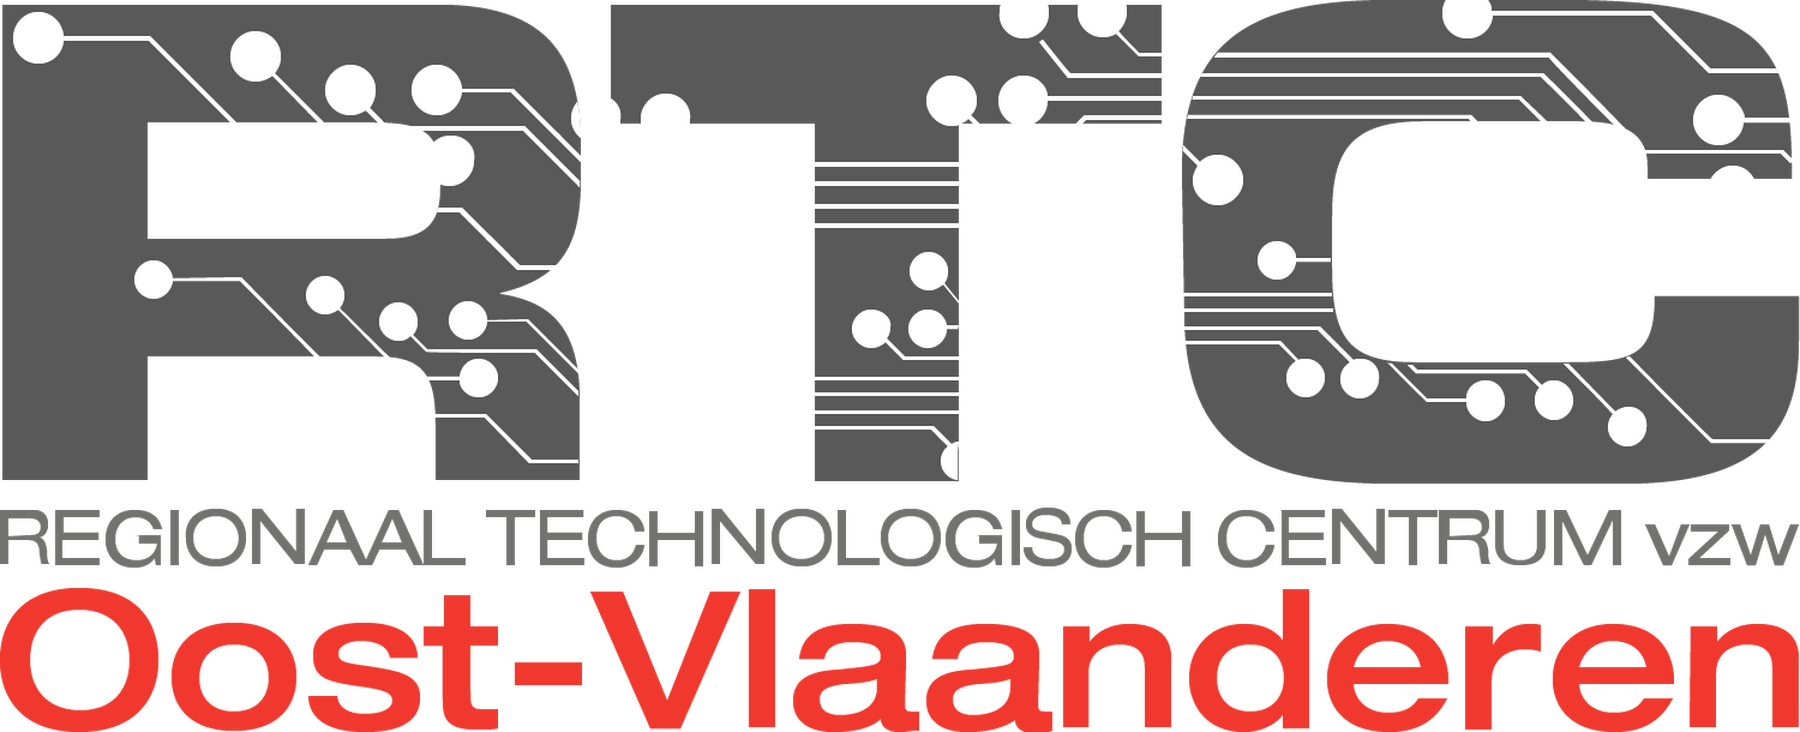 rtc-OVL-logo-1500_1